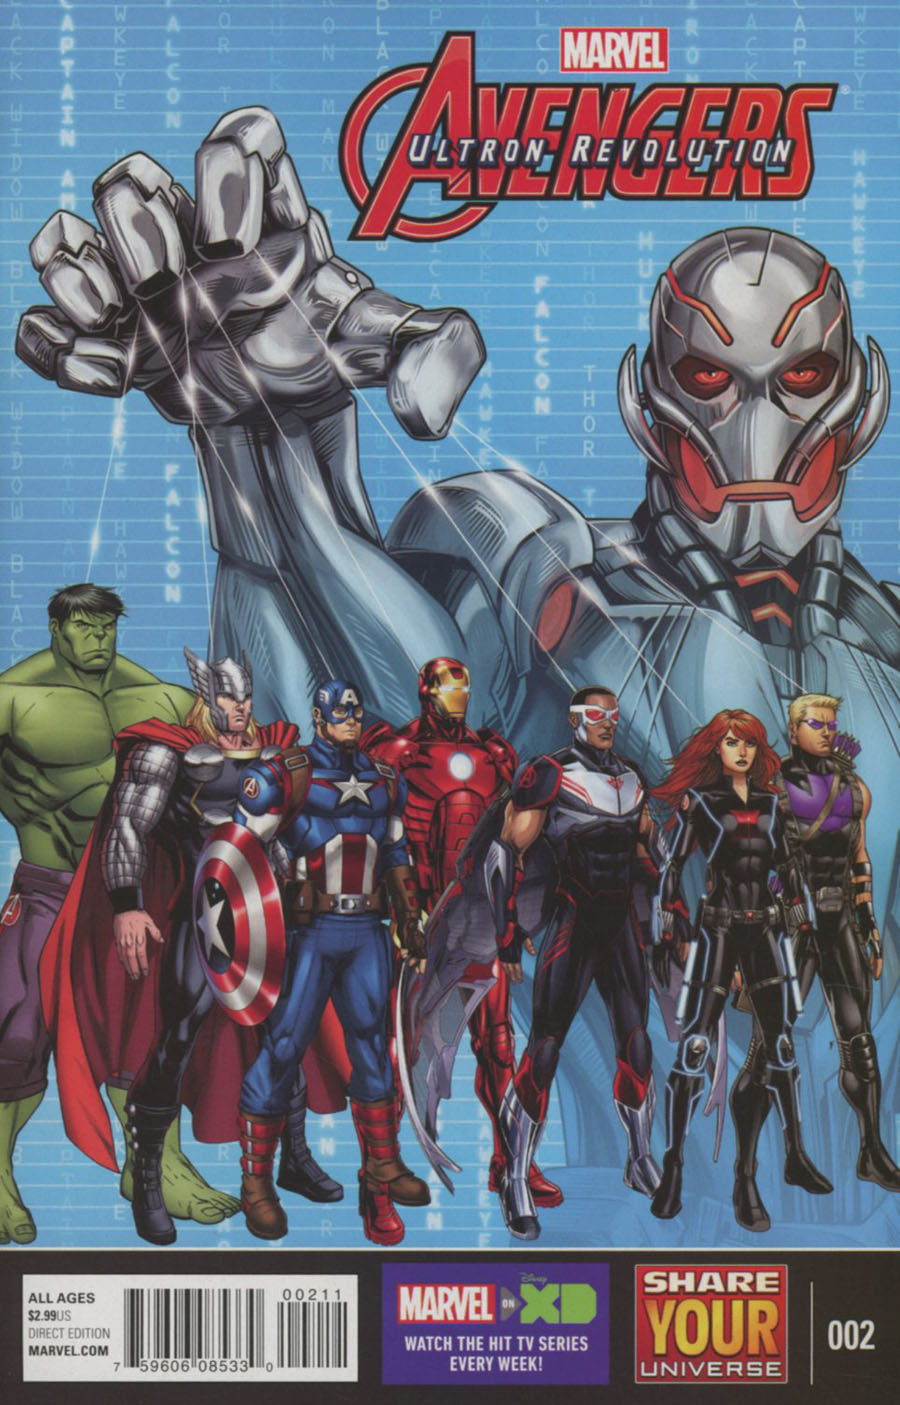 Marvel Universe Avengers Ultron Revolution #2